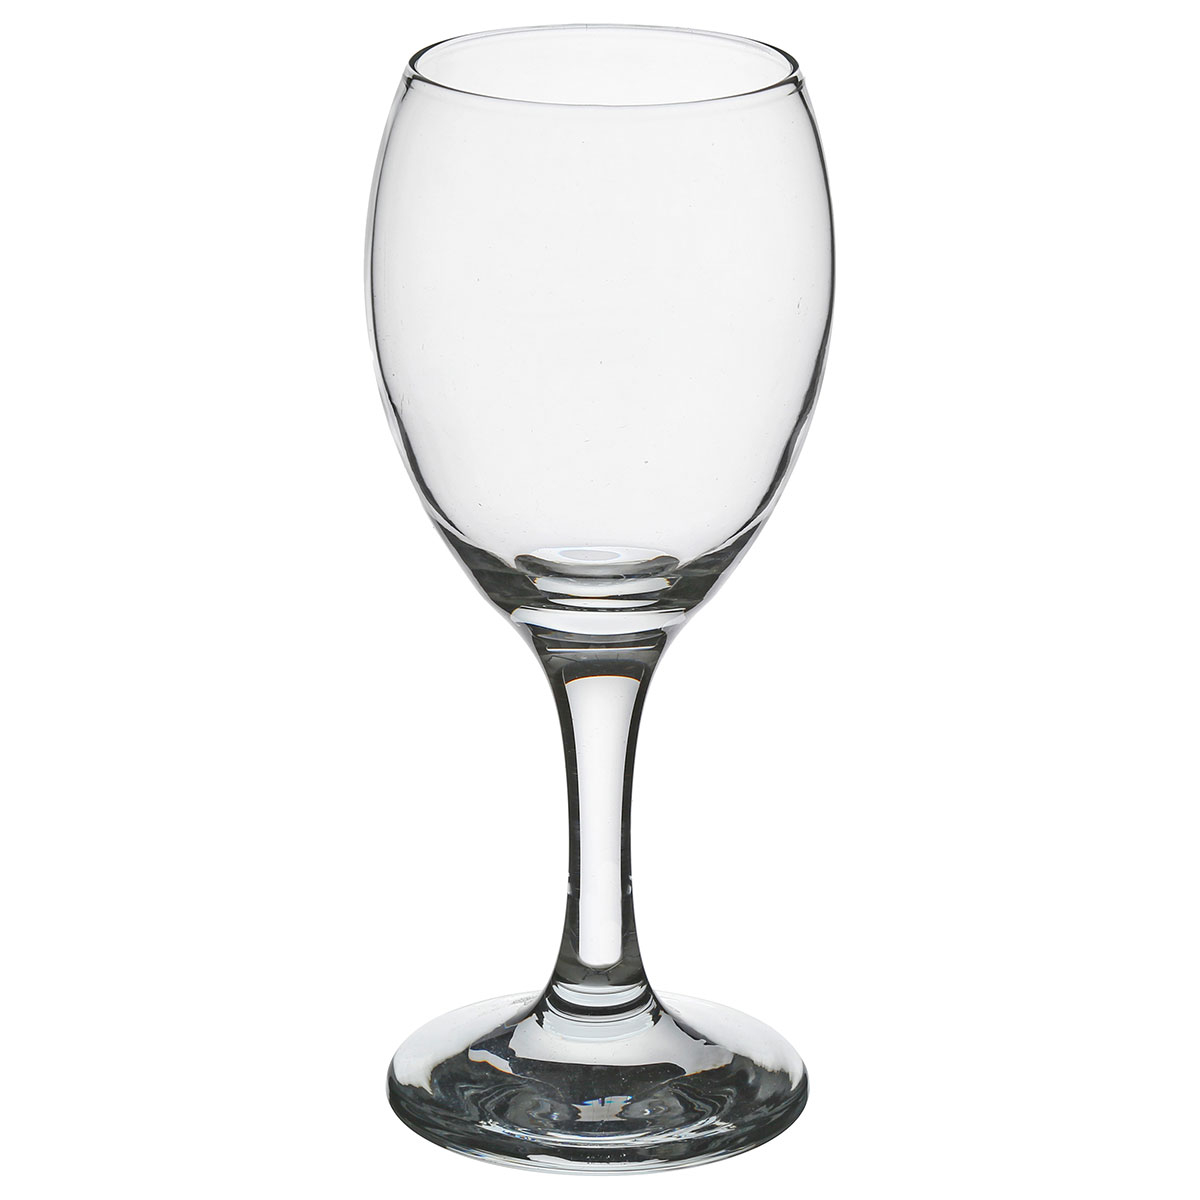 Ποτήρι Κρασιού Κολωνάτο 200ml S-D Paola 154746